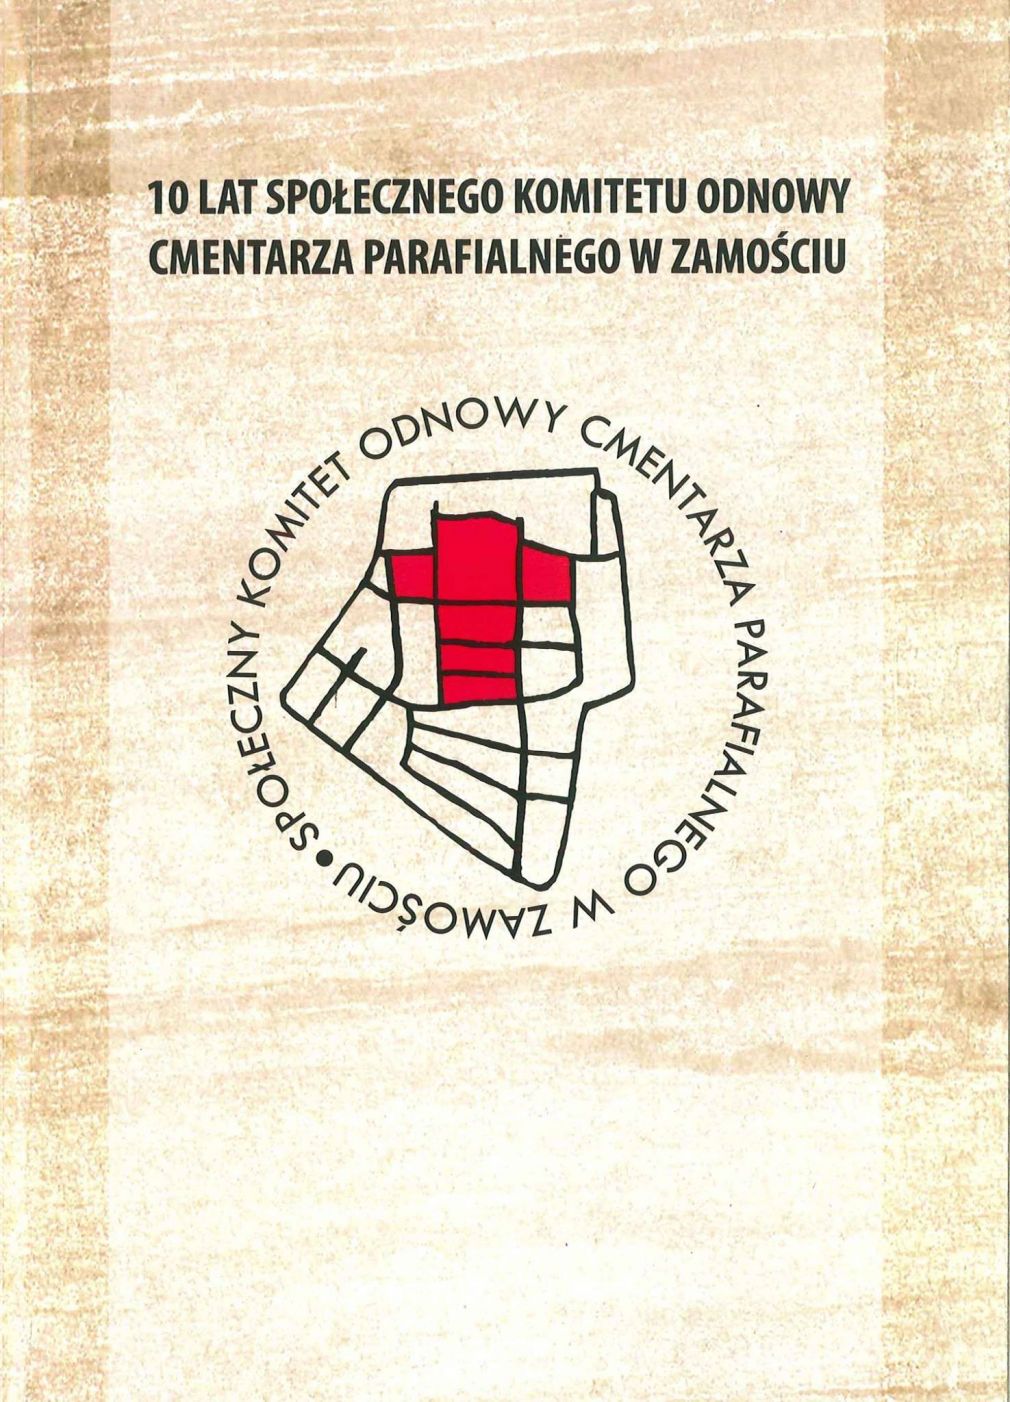 10 lat Społecznego Komitetu Odnowy Cmentarza Parafialnego w Zamościu, foto: materiał nadesłany